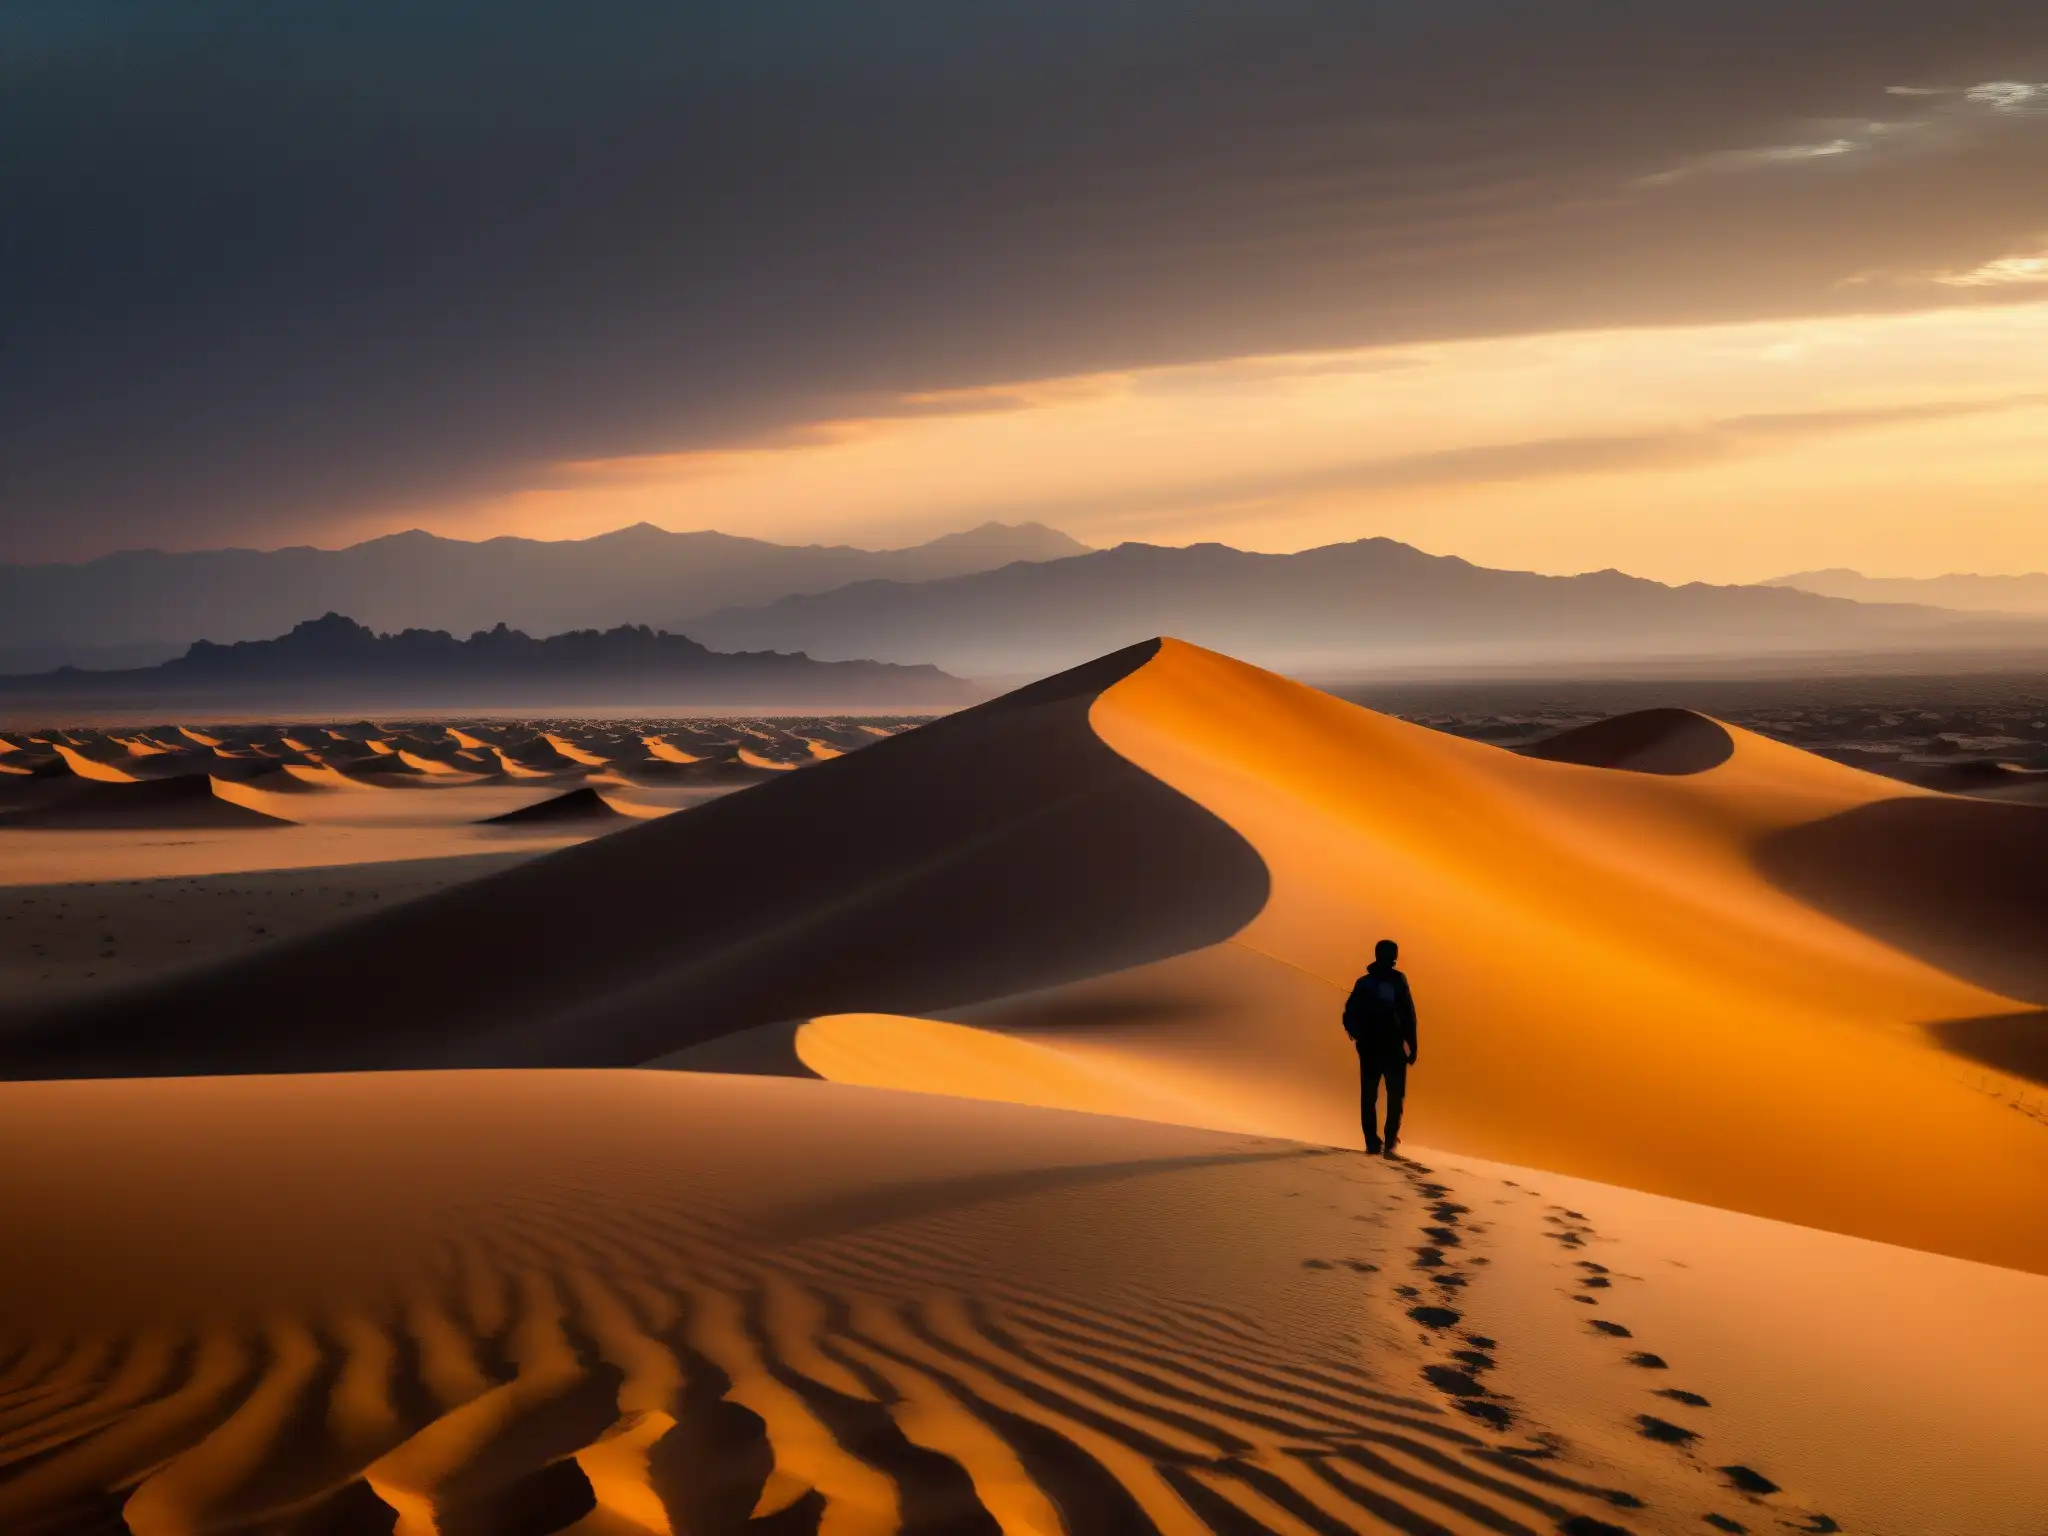 Un paisaje desértico inmenso con una figura solitaria en una duna, observando el horizonte bañado por la cálida luz dorada del sol poniente